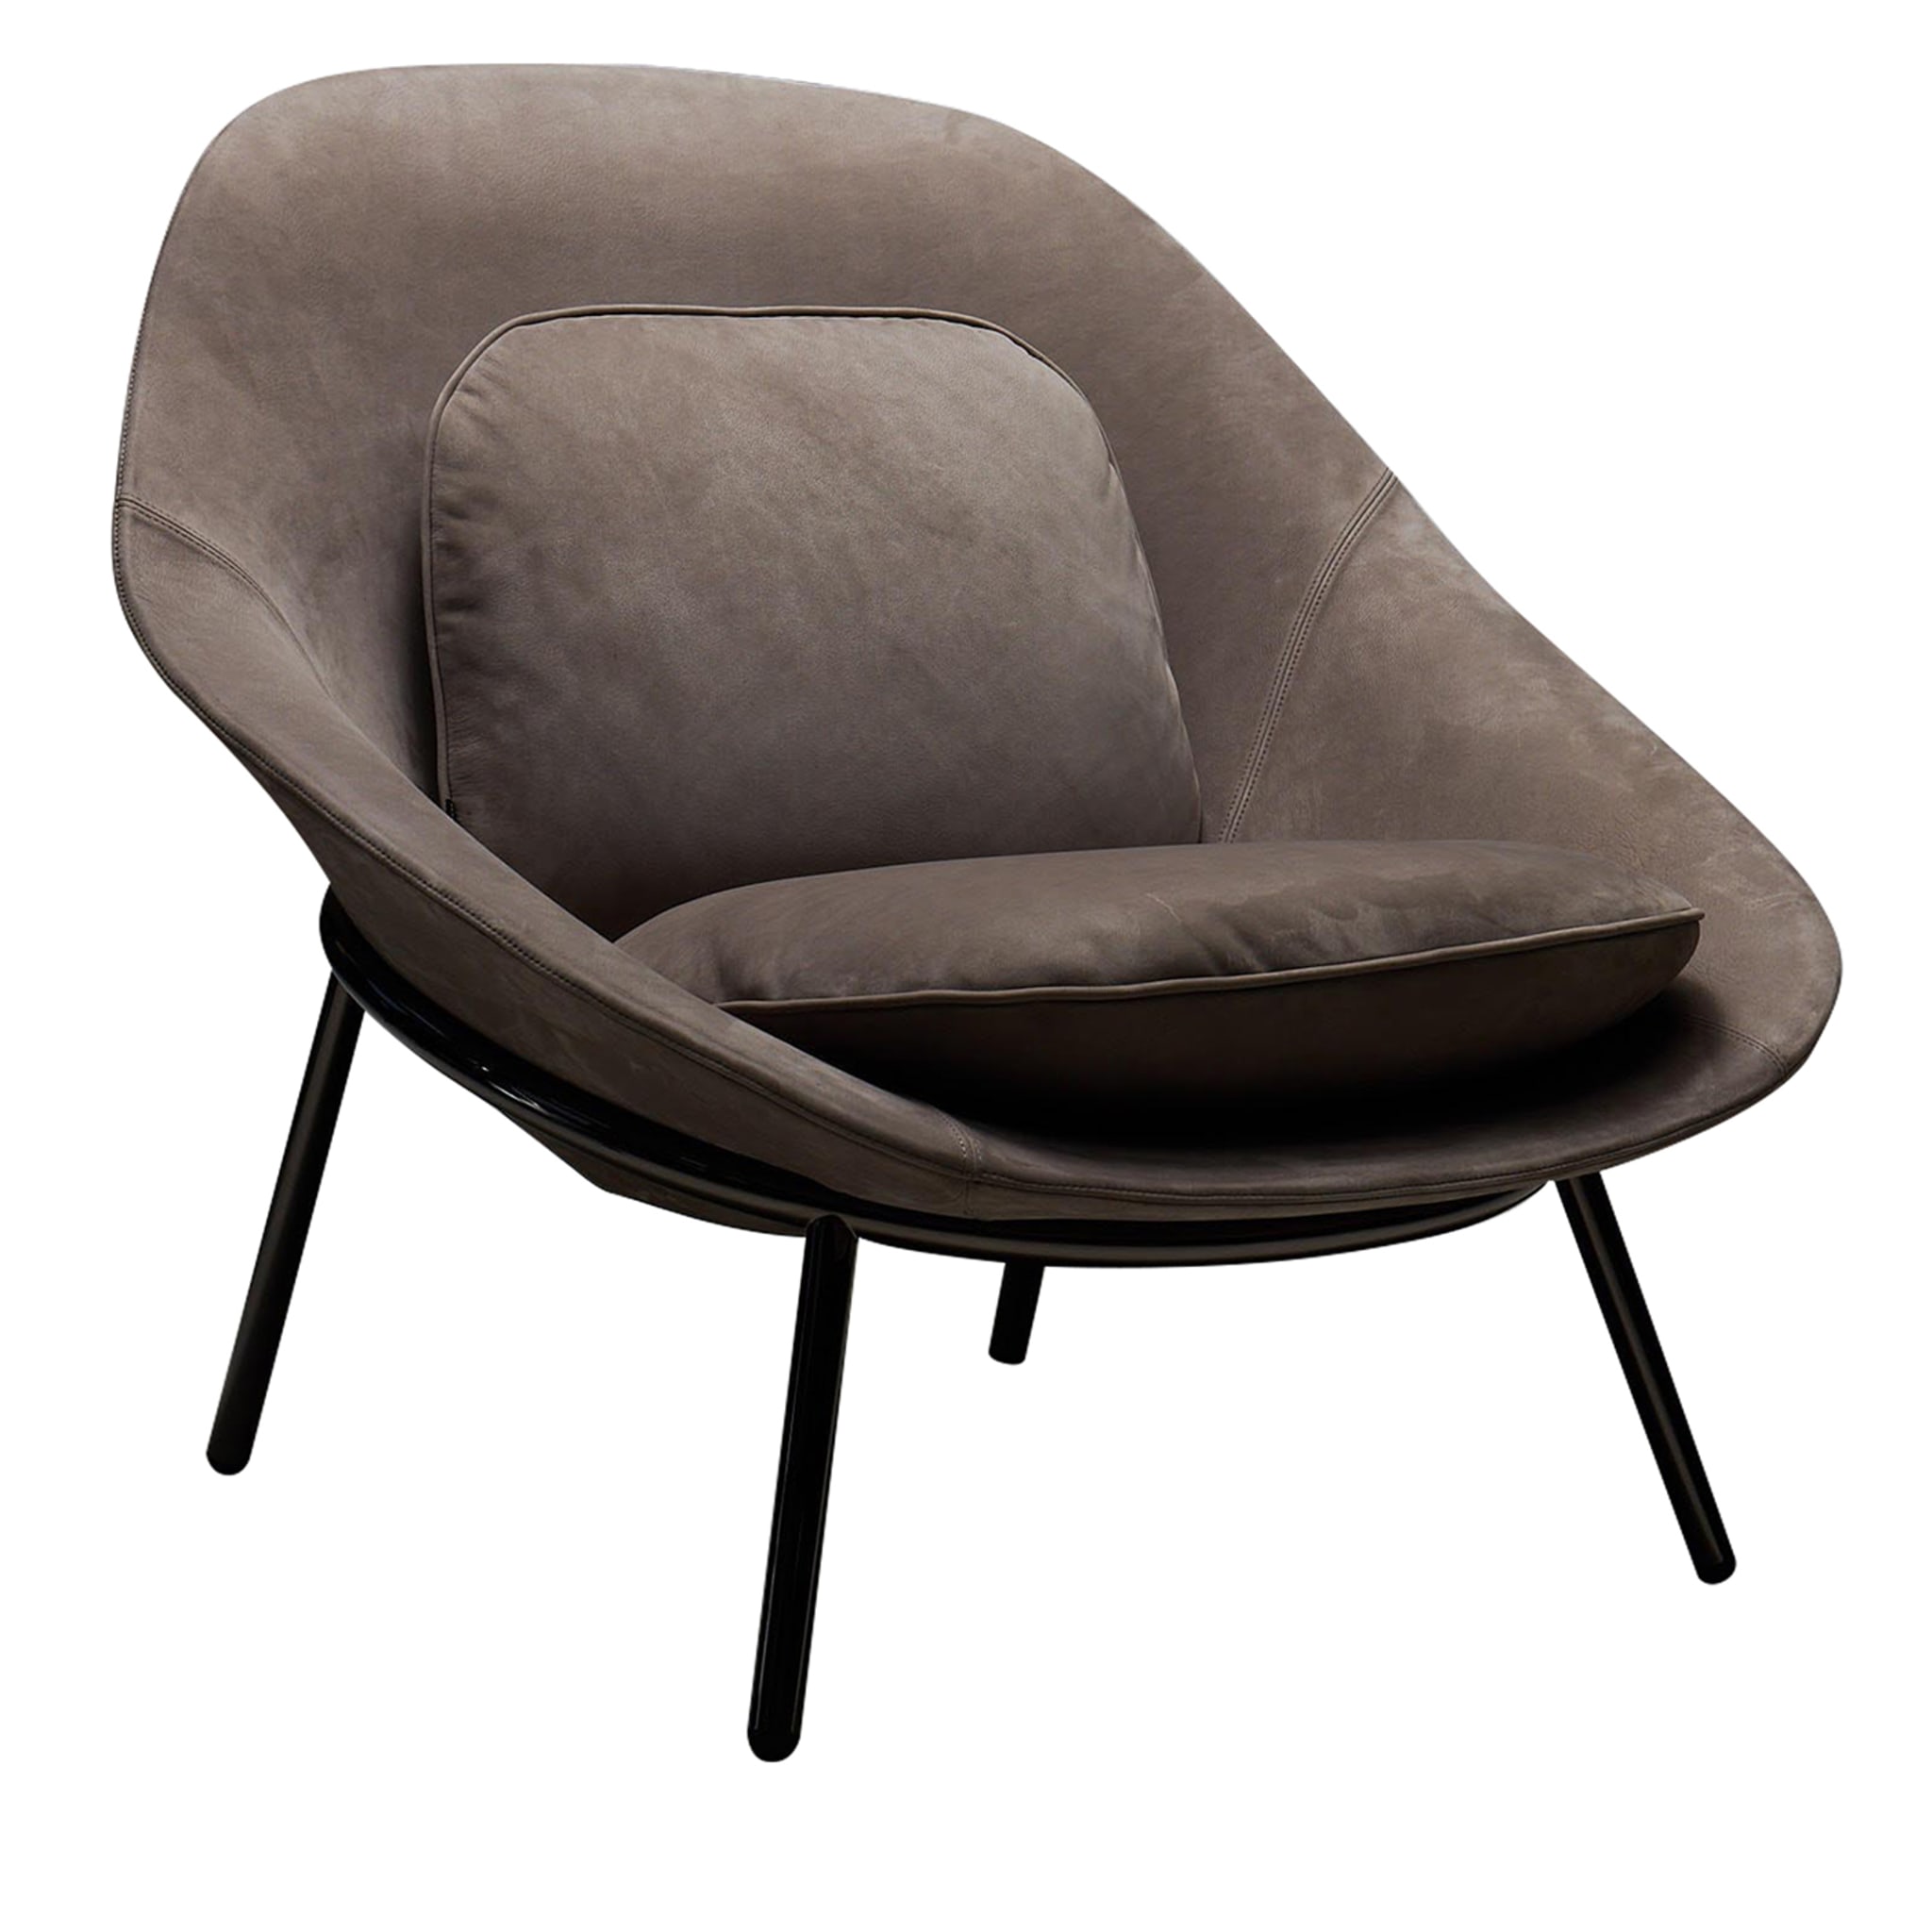 Amphora Lounge Chair by Noé Duchaufour-Lawrance - Main view